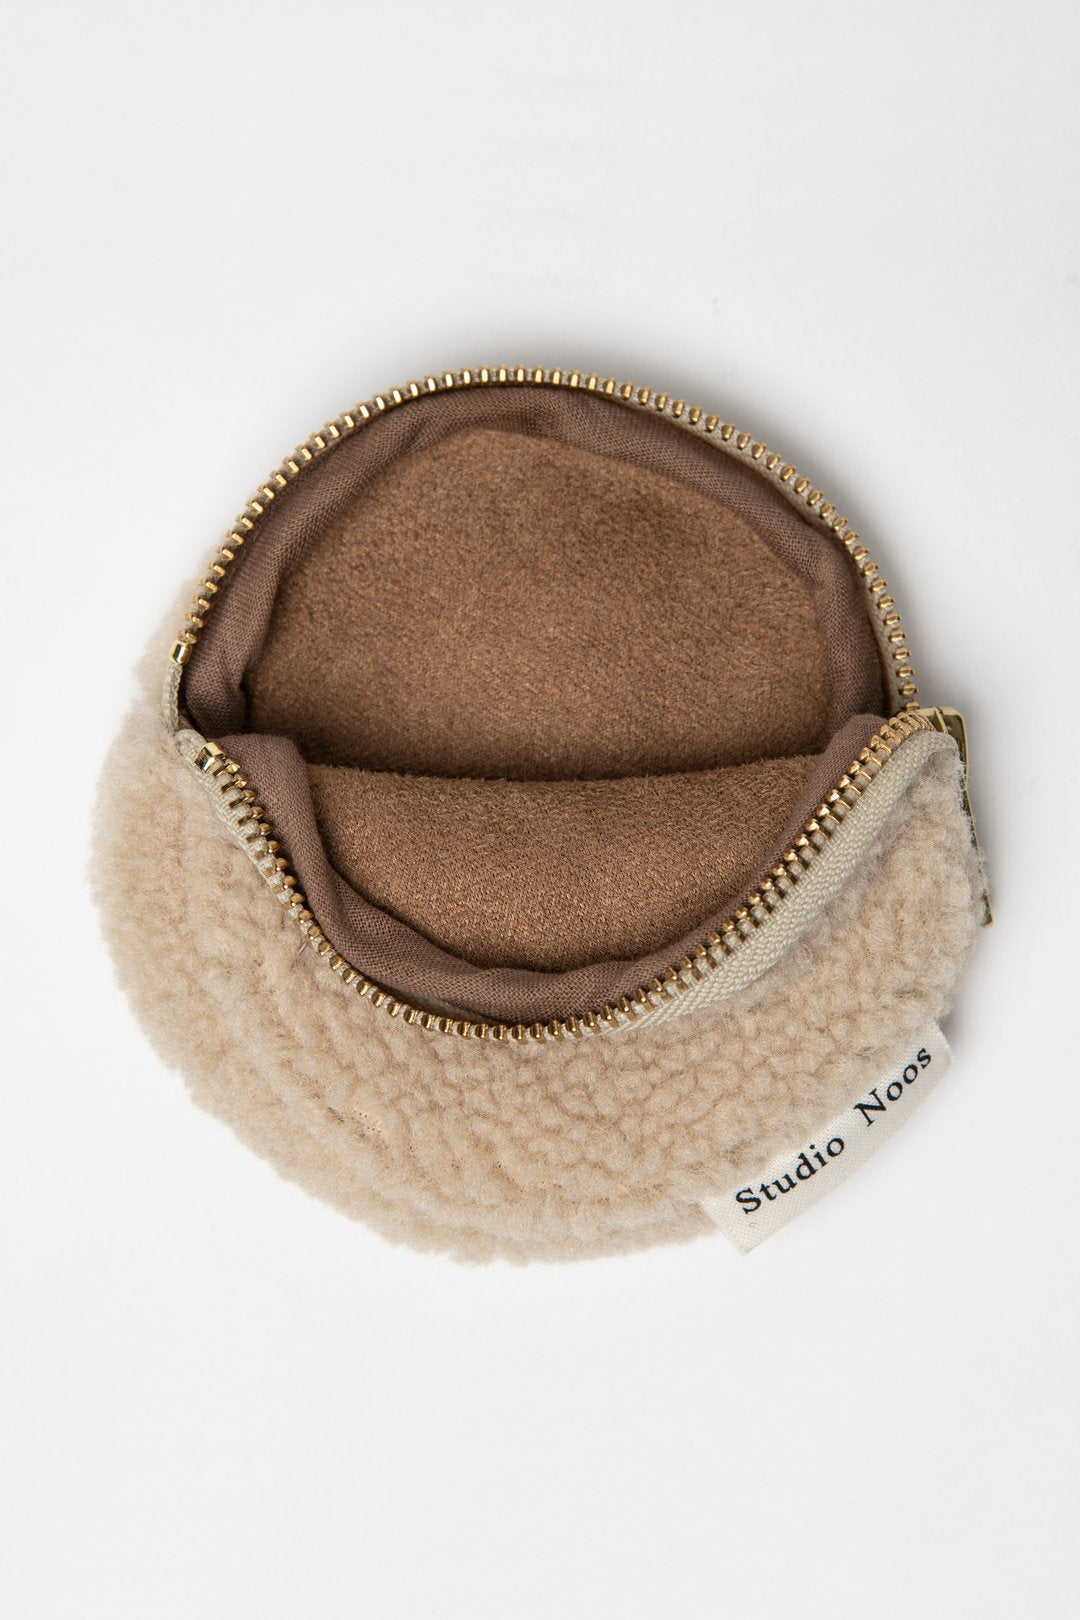 Beige ecru sand round teddy wallet coin purse pouch with gold zip 